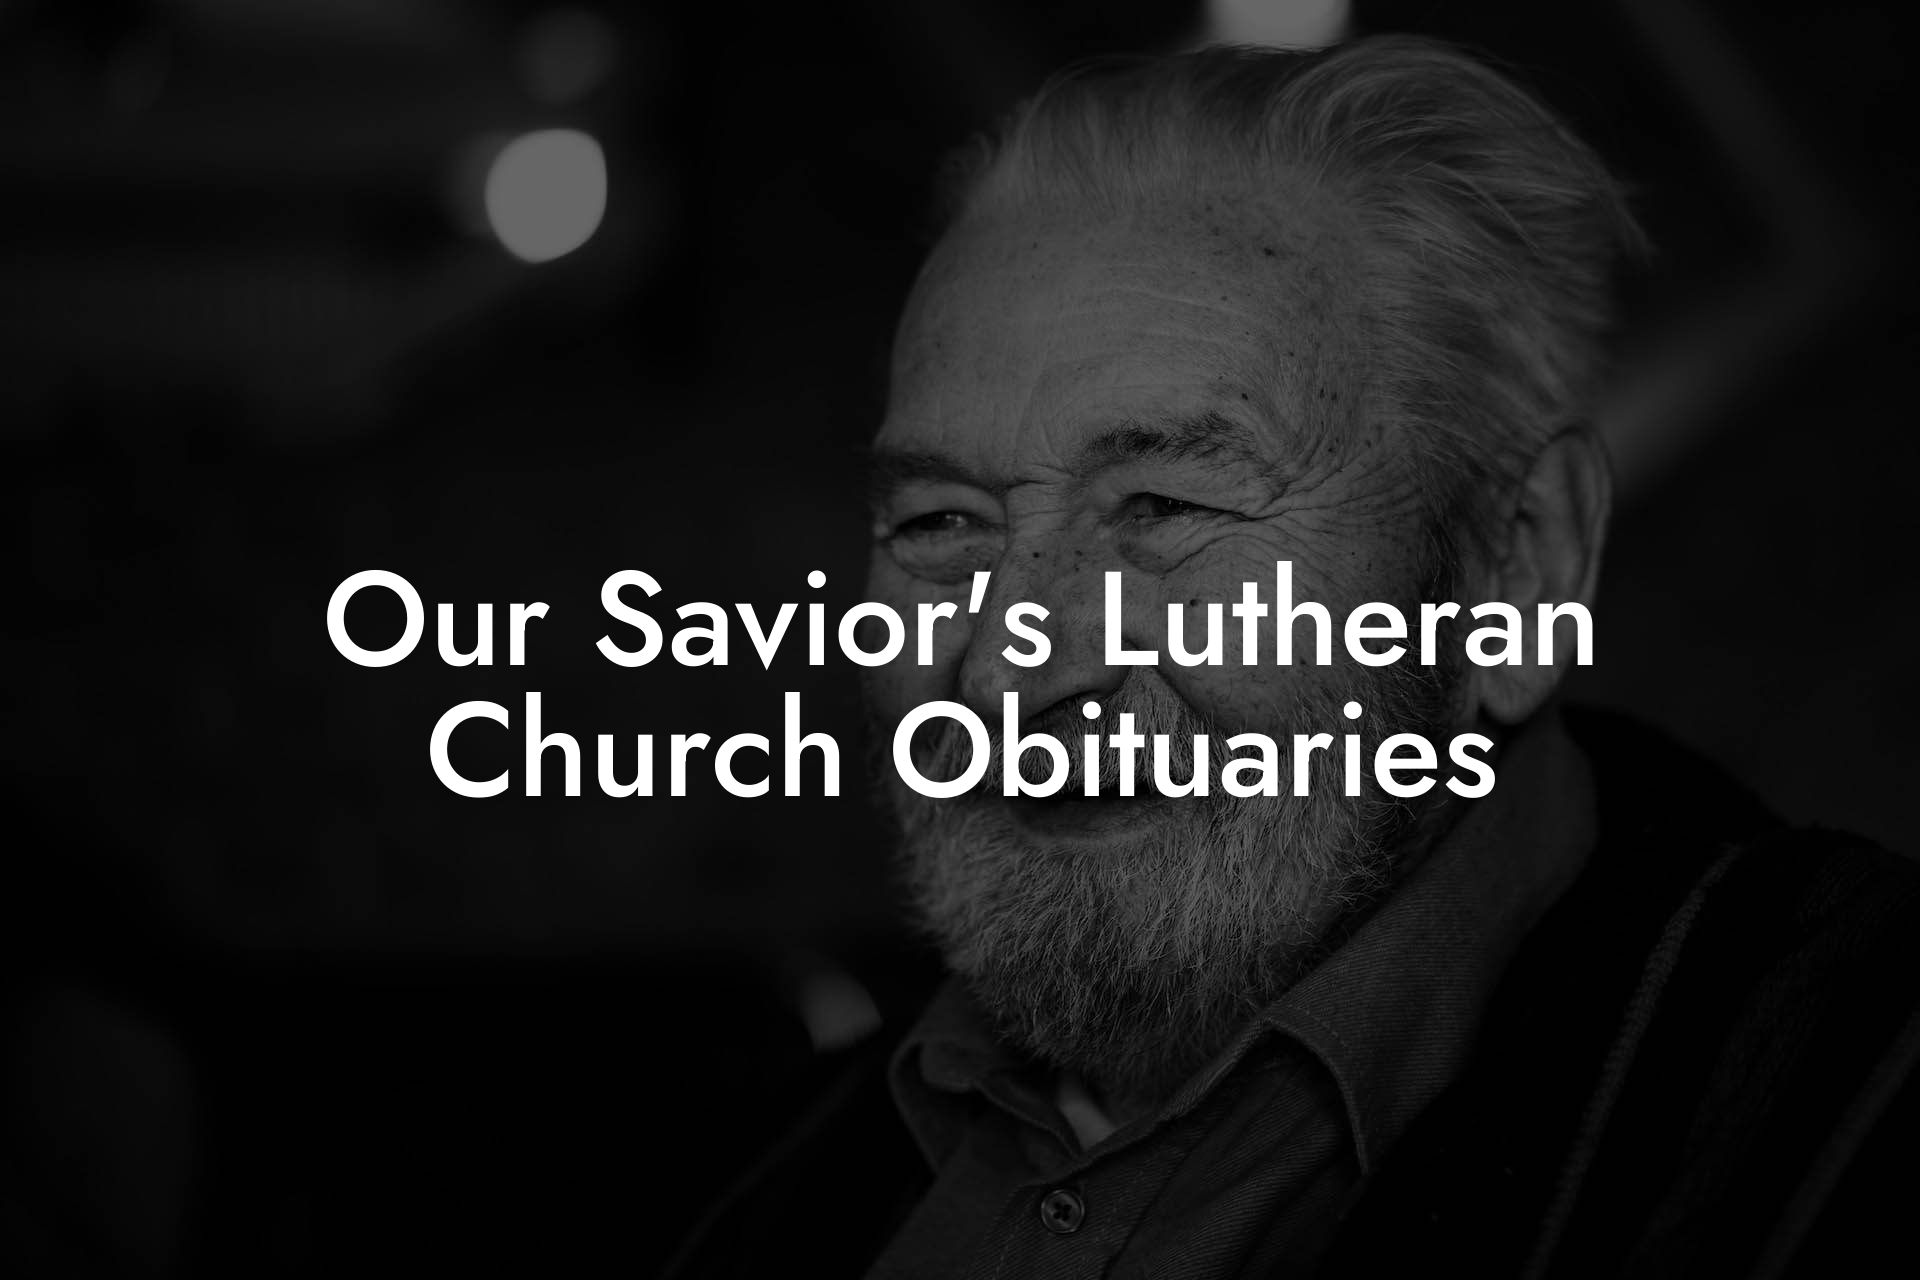 Our Savior's Lutheran Church Obituaries